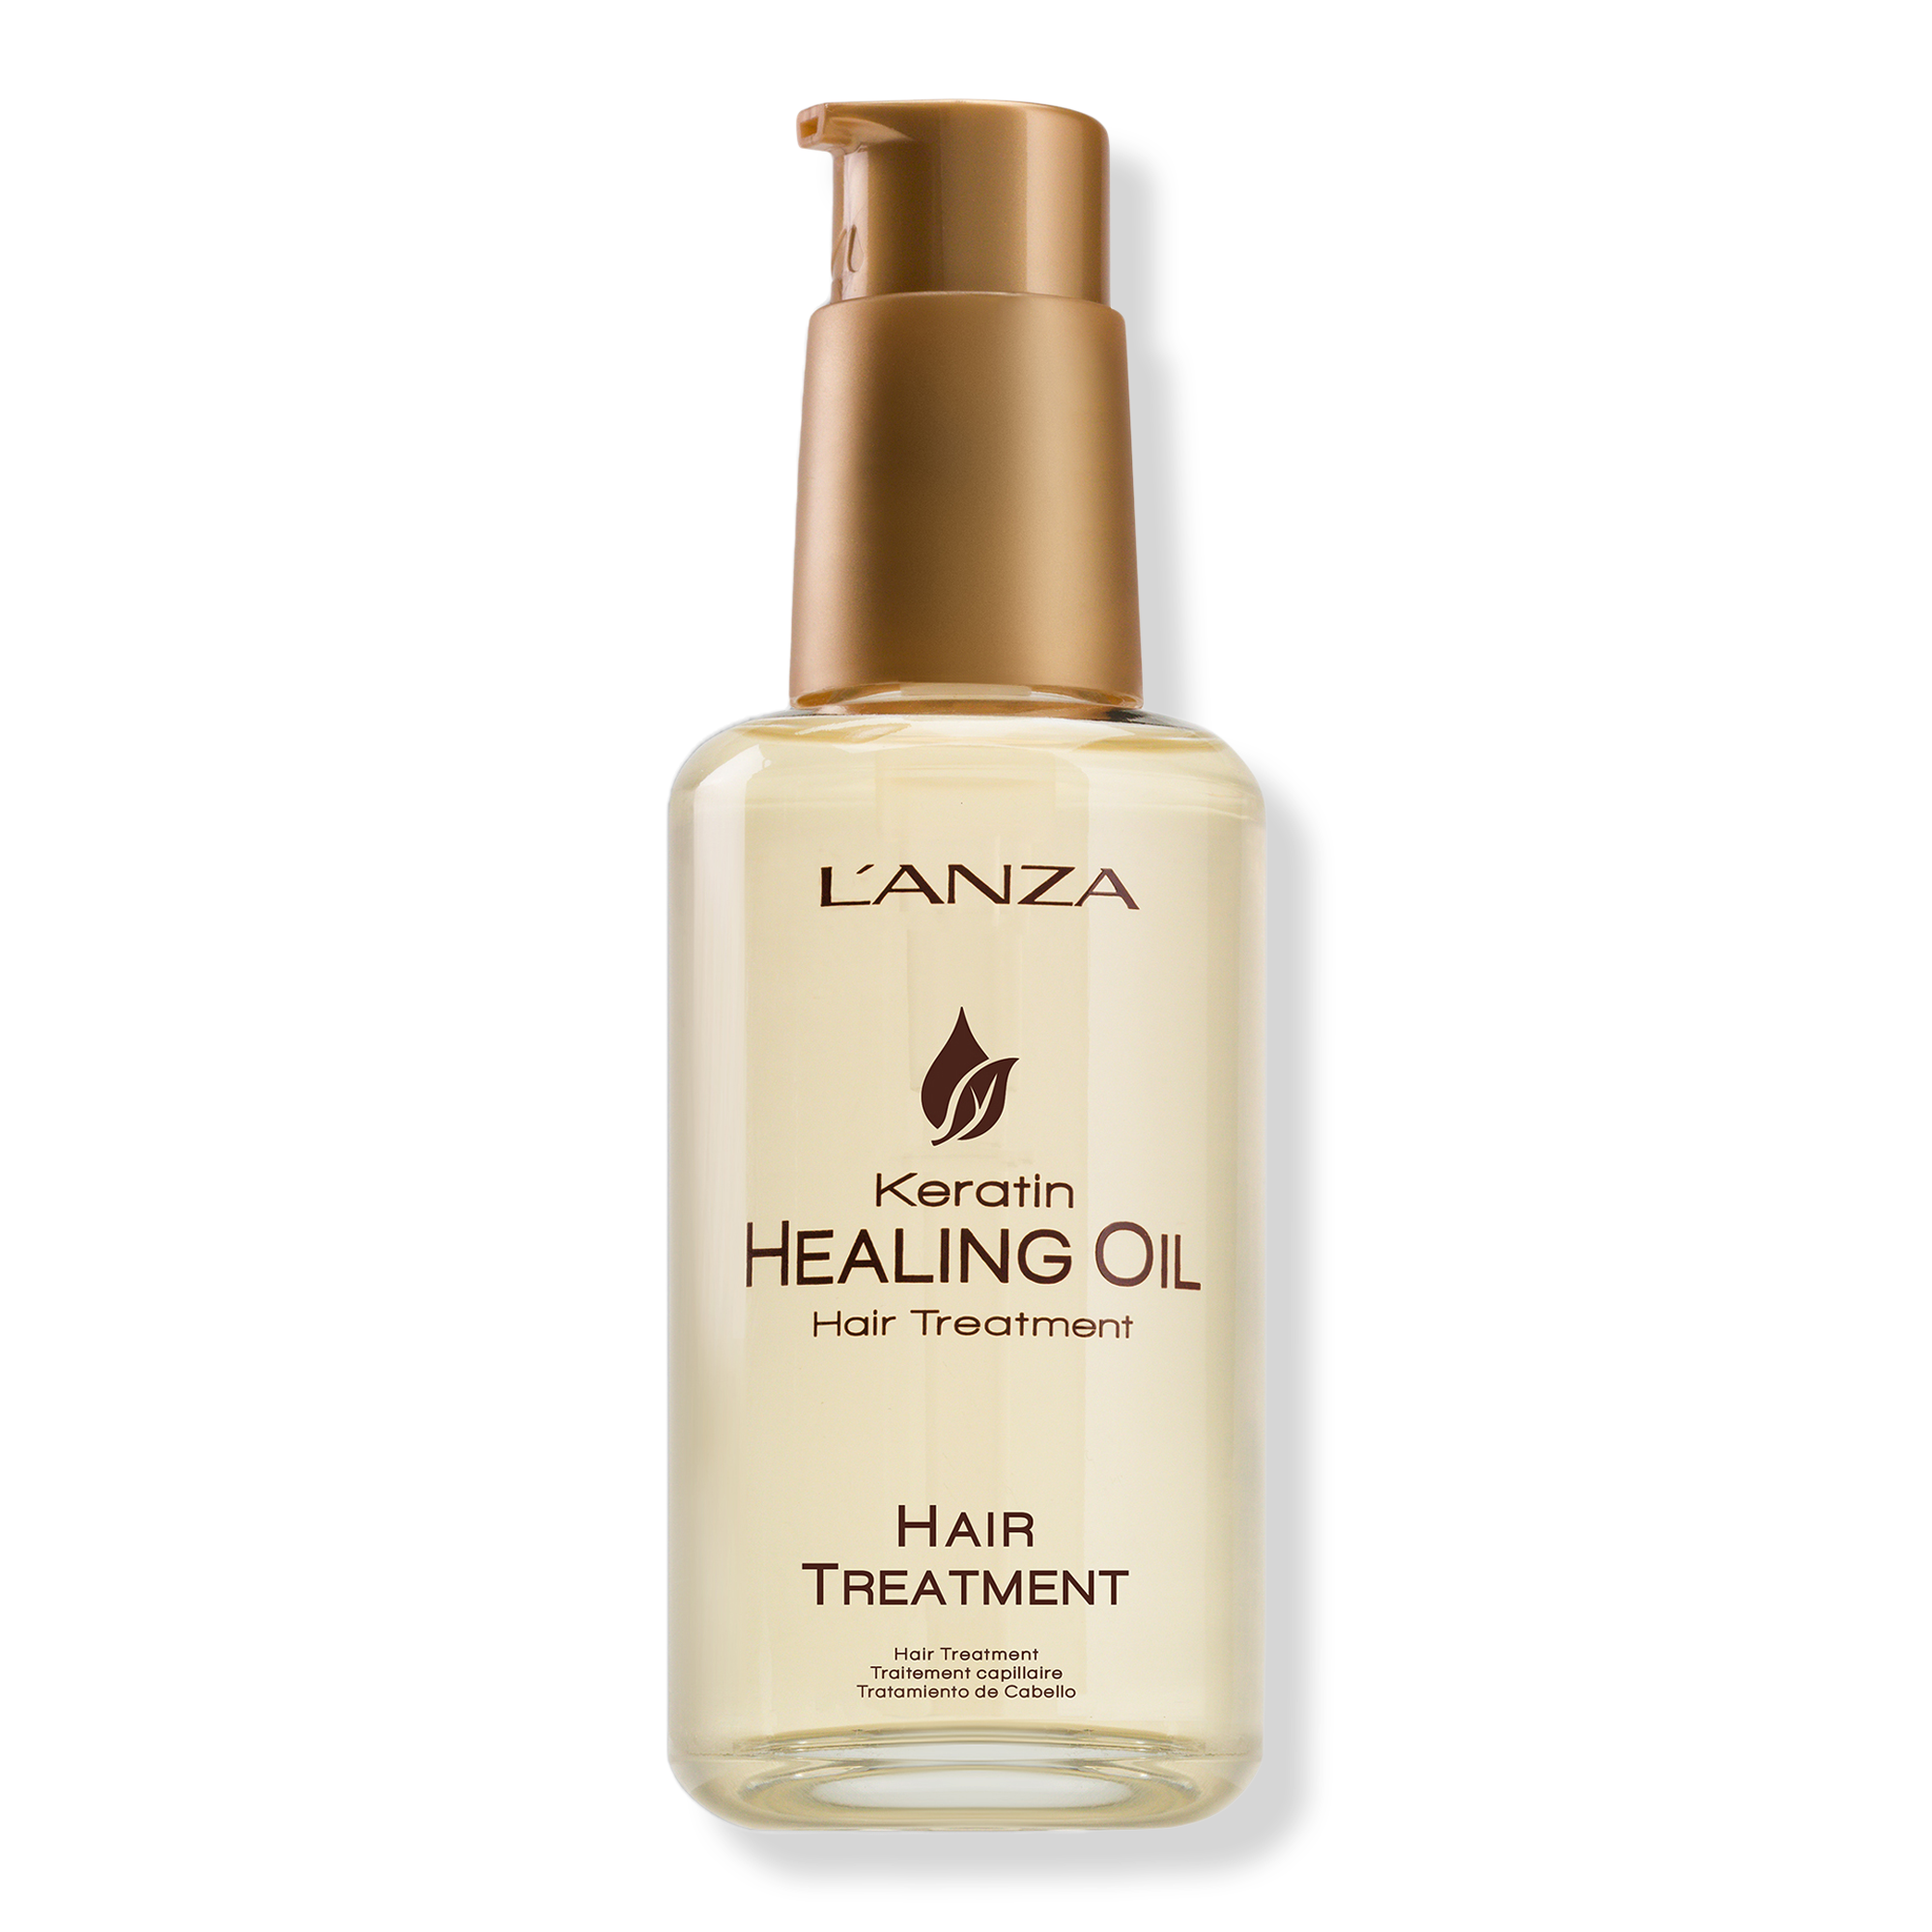 L'anza Keratin Healing Oil Hair Treatment / 3.4OZ